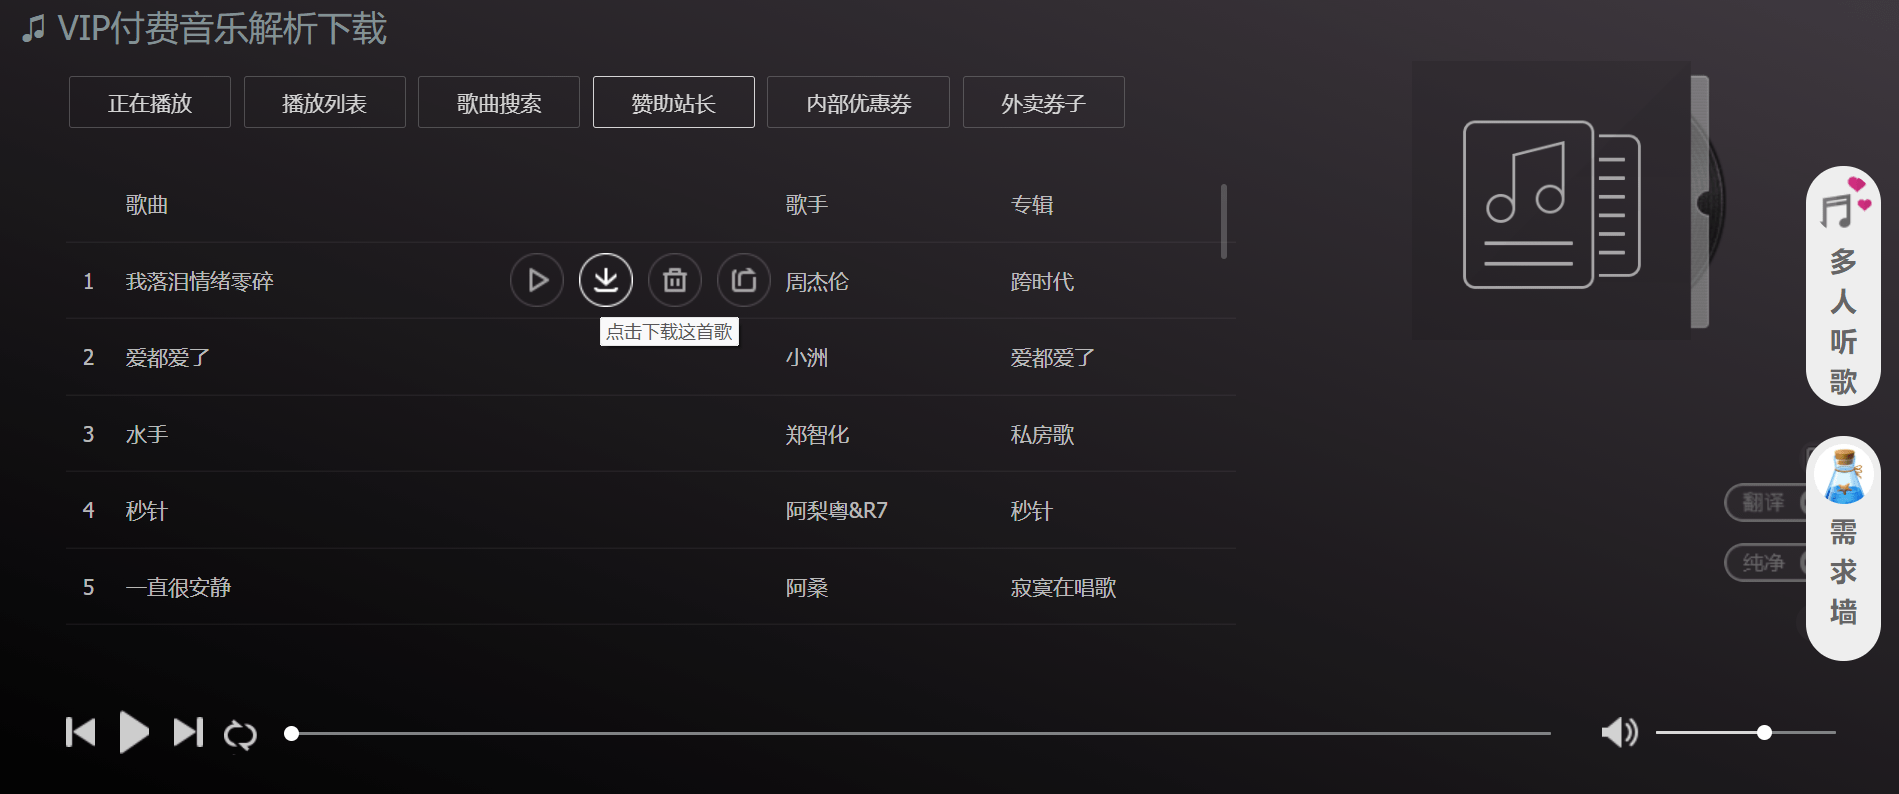 米乐m69个无损音乐下载平台全网音乐免费听随便下(图7)